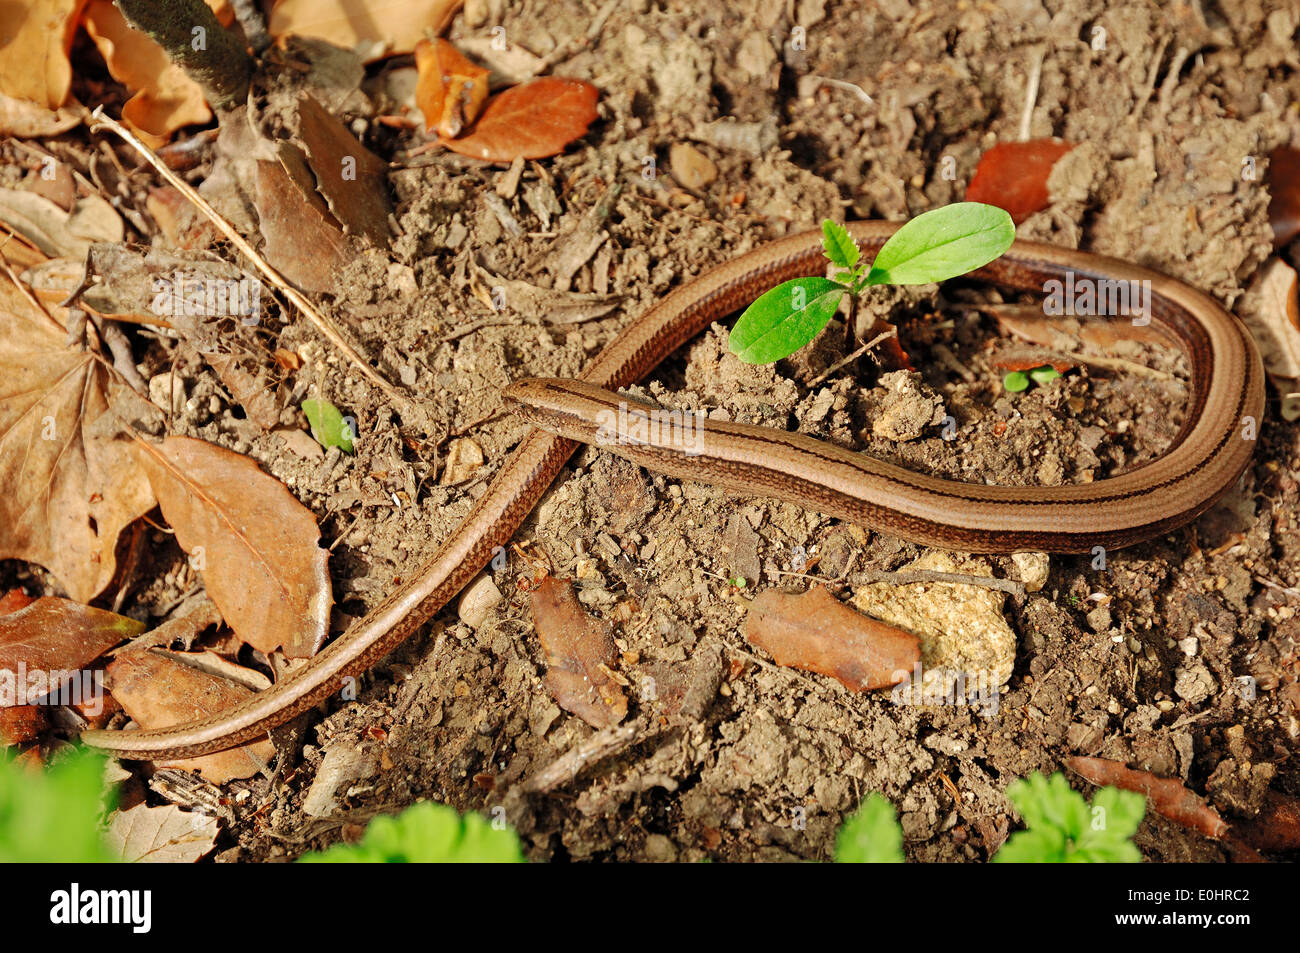 Langsam, Wurm, Slowworm, blinde Wurm, Blindworm (geschiedenen Fragilis), Provence, Südfrankreich Stockfoto